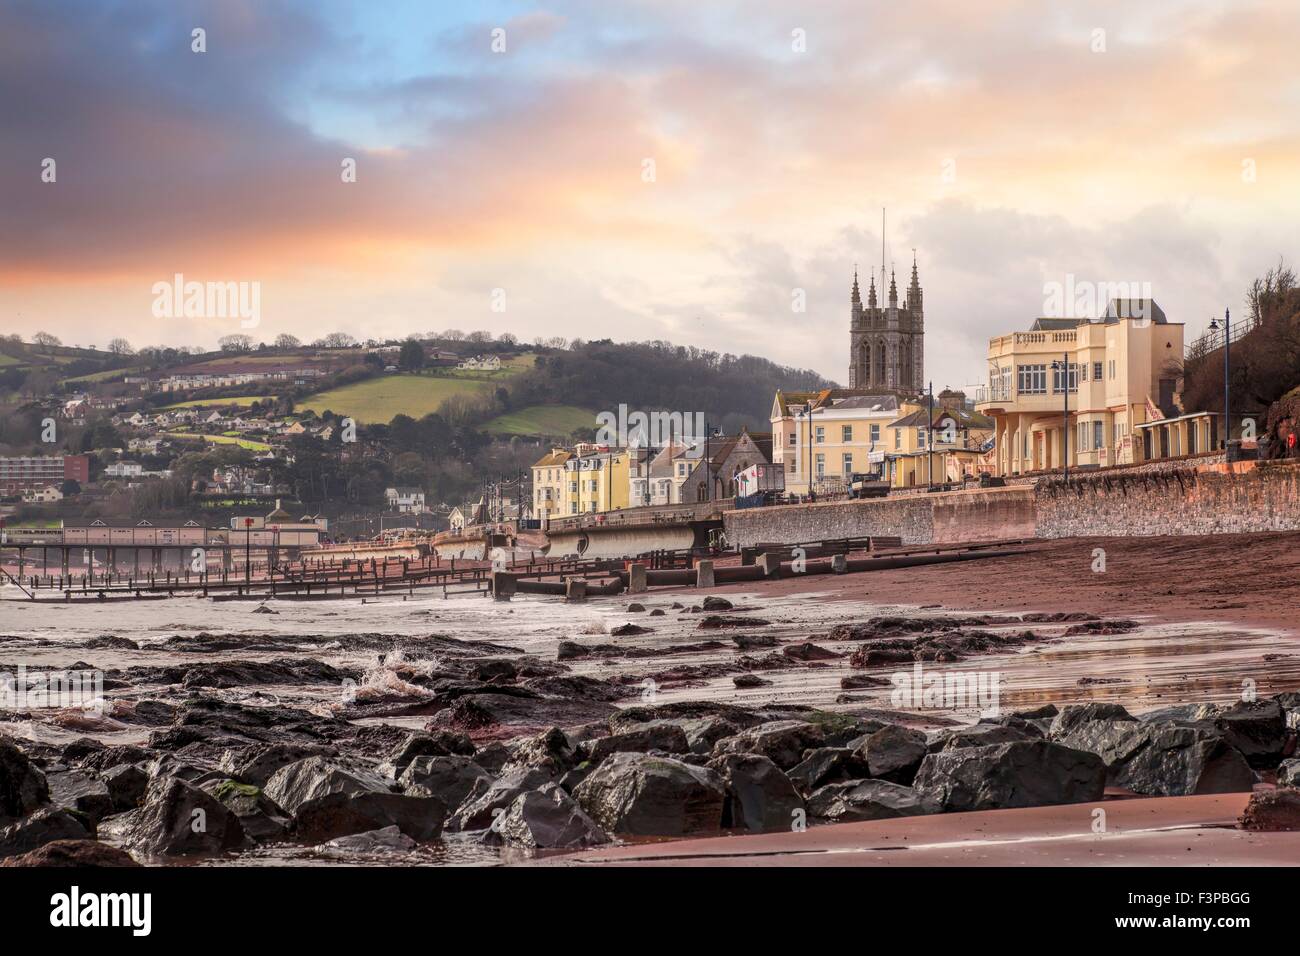 Der Strand von Teignmouth, Devon, England. Stockfoto